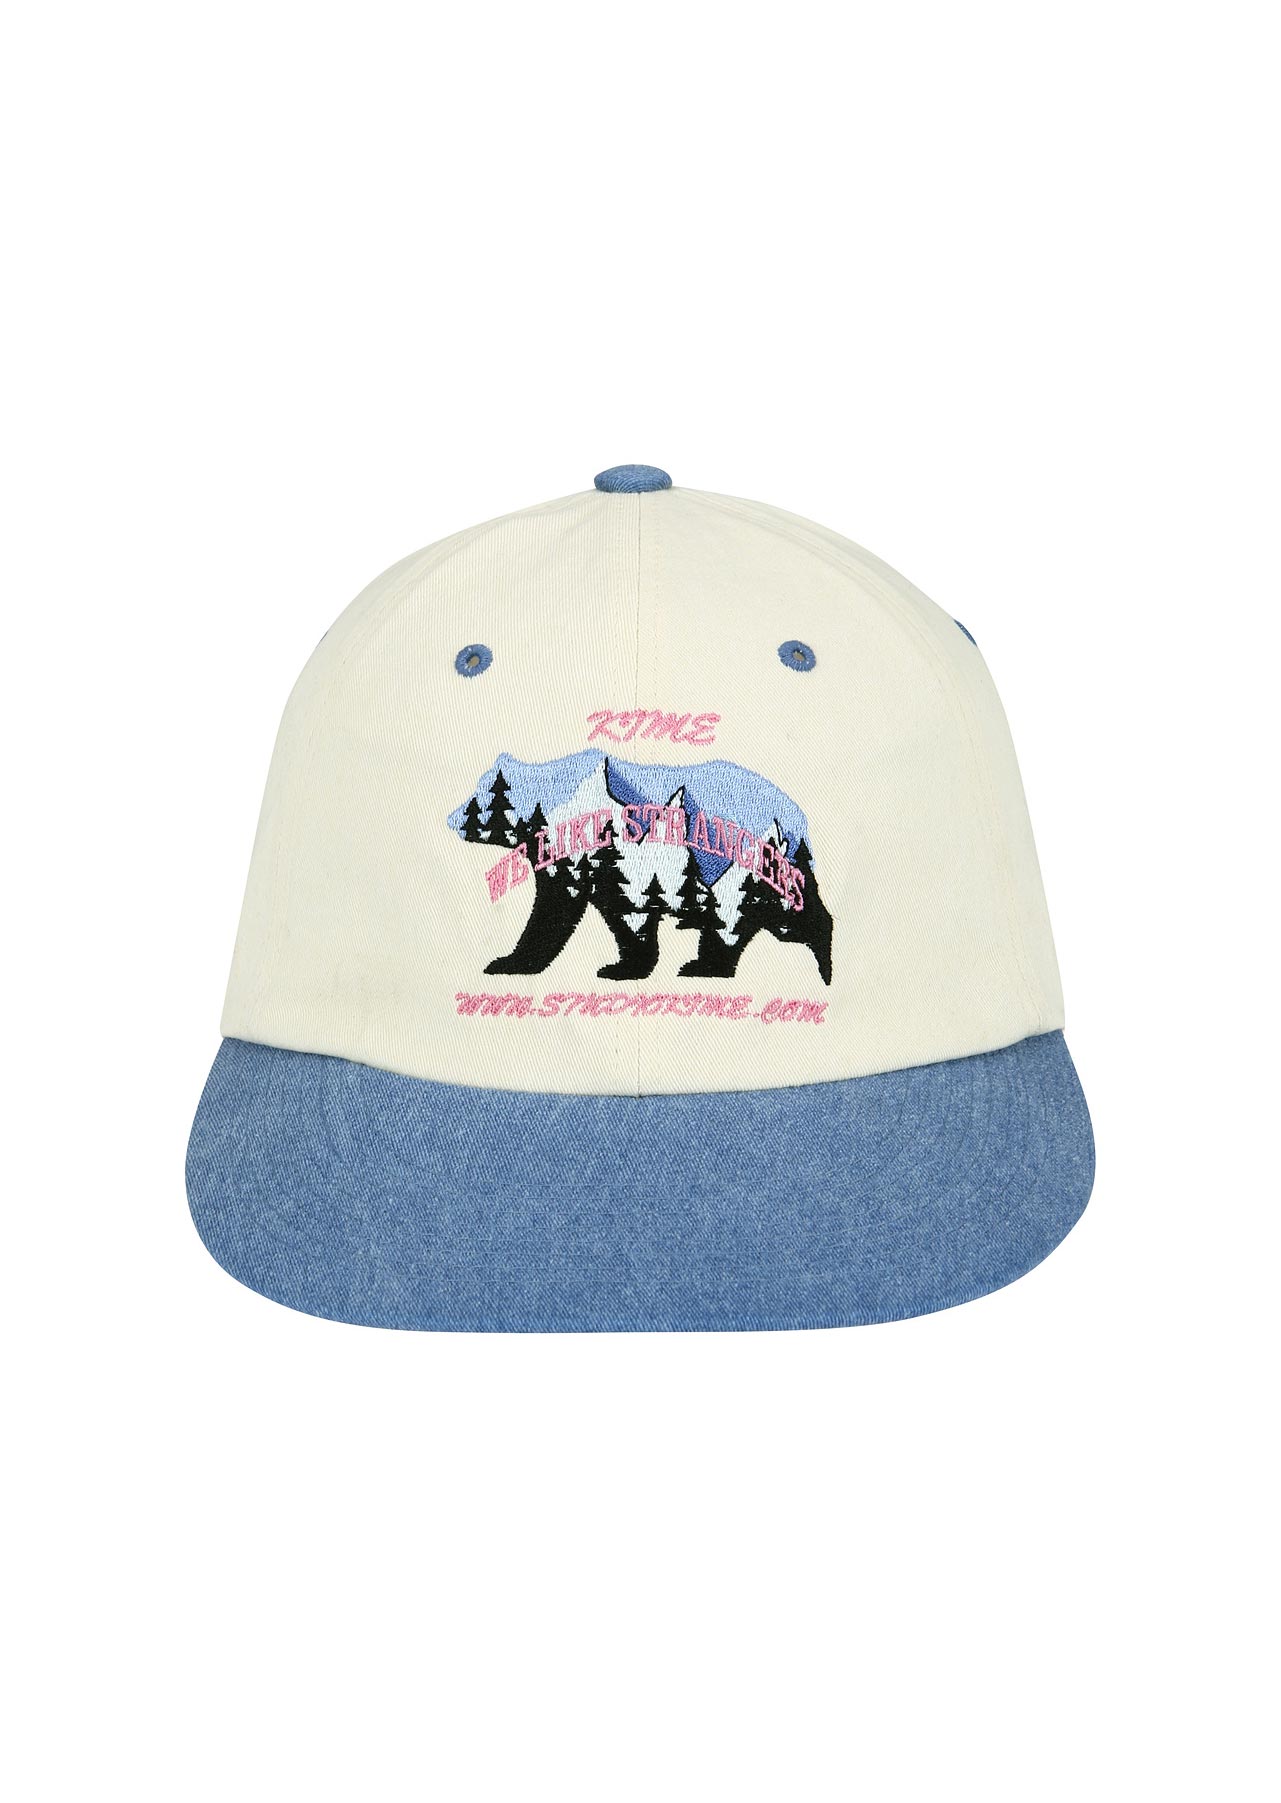 BAER BALL CAP (BLUE)